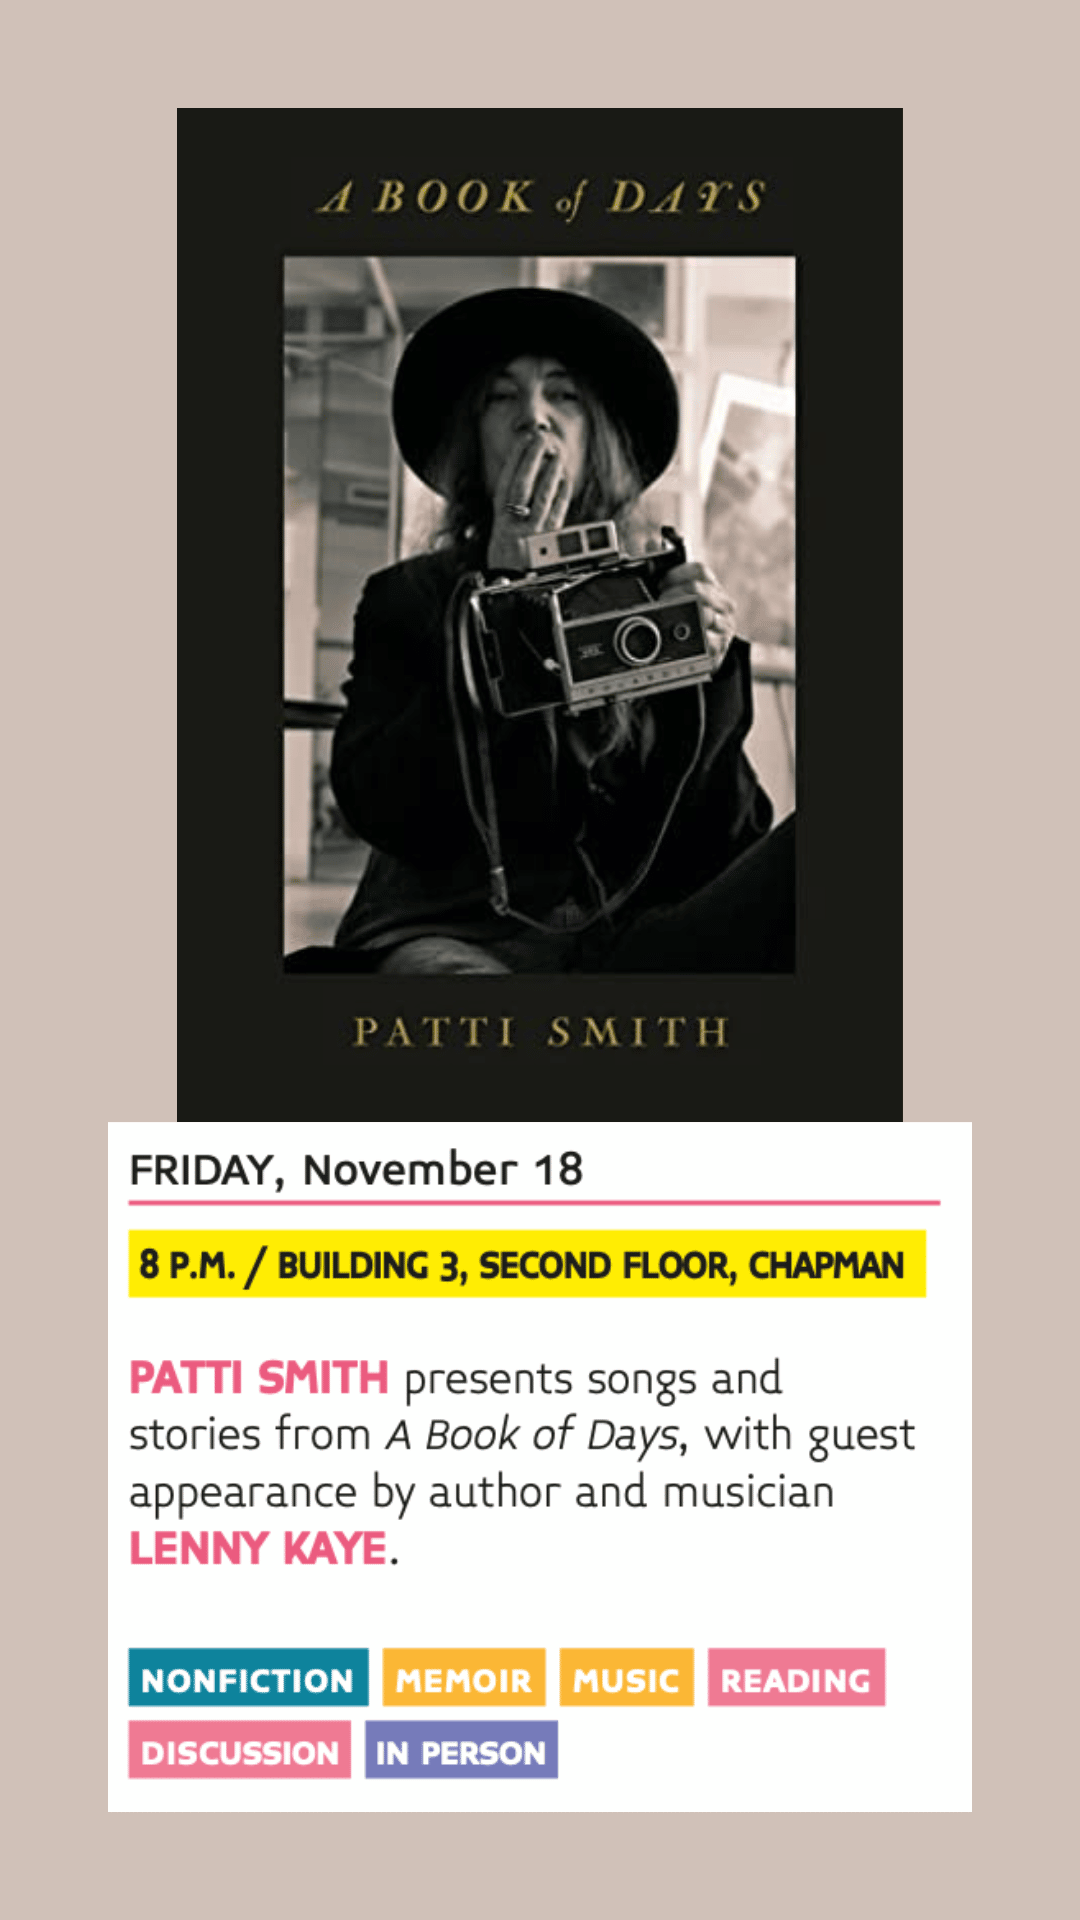 Miami Book Fair 2022 - Patti Smith, a book of days